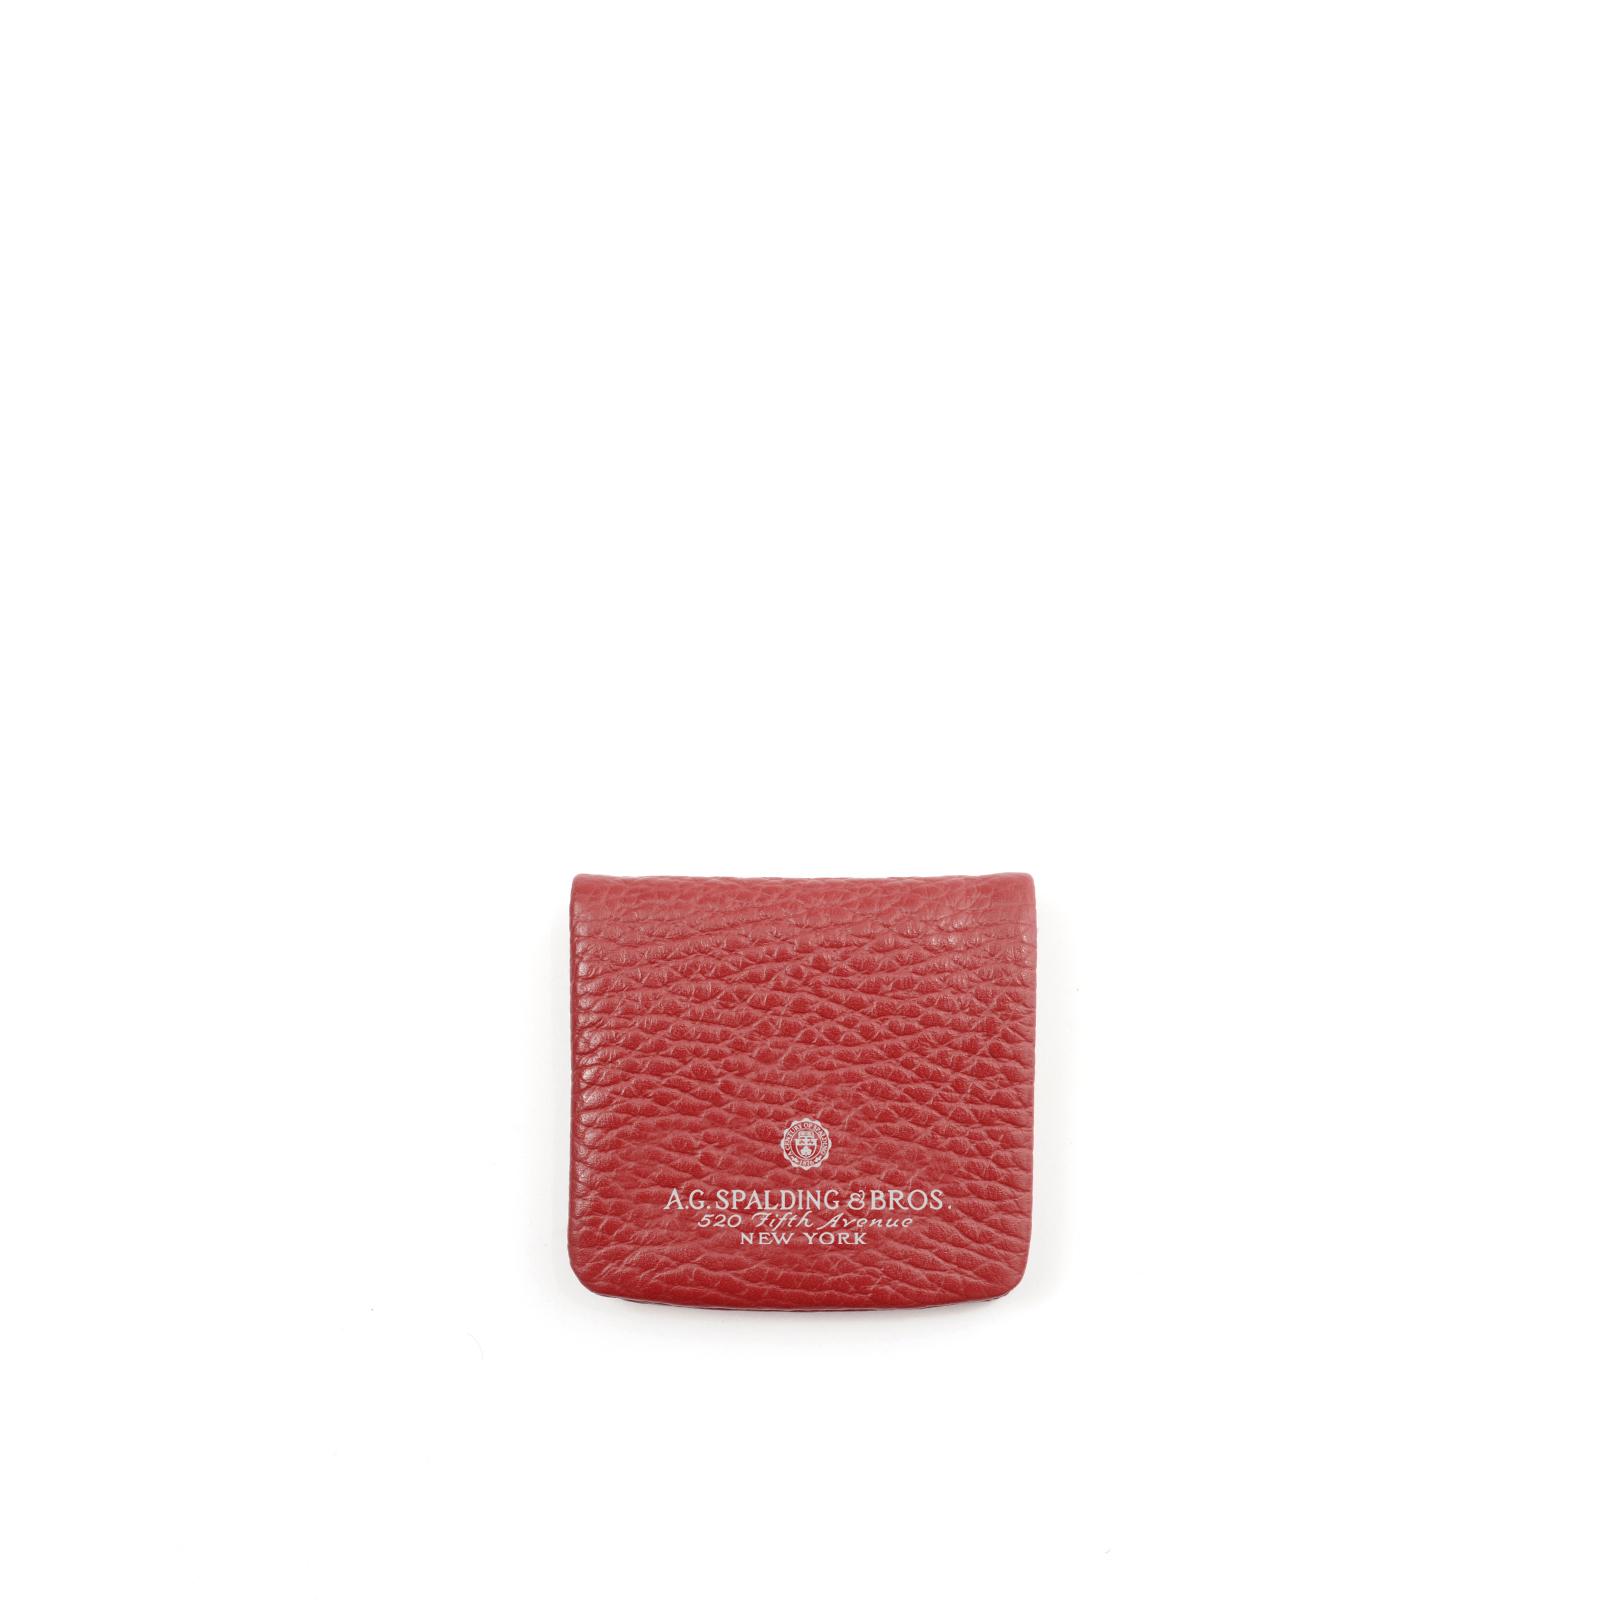 Porta Monete Soft Tiffany Unisex Rosso Scuro 